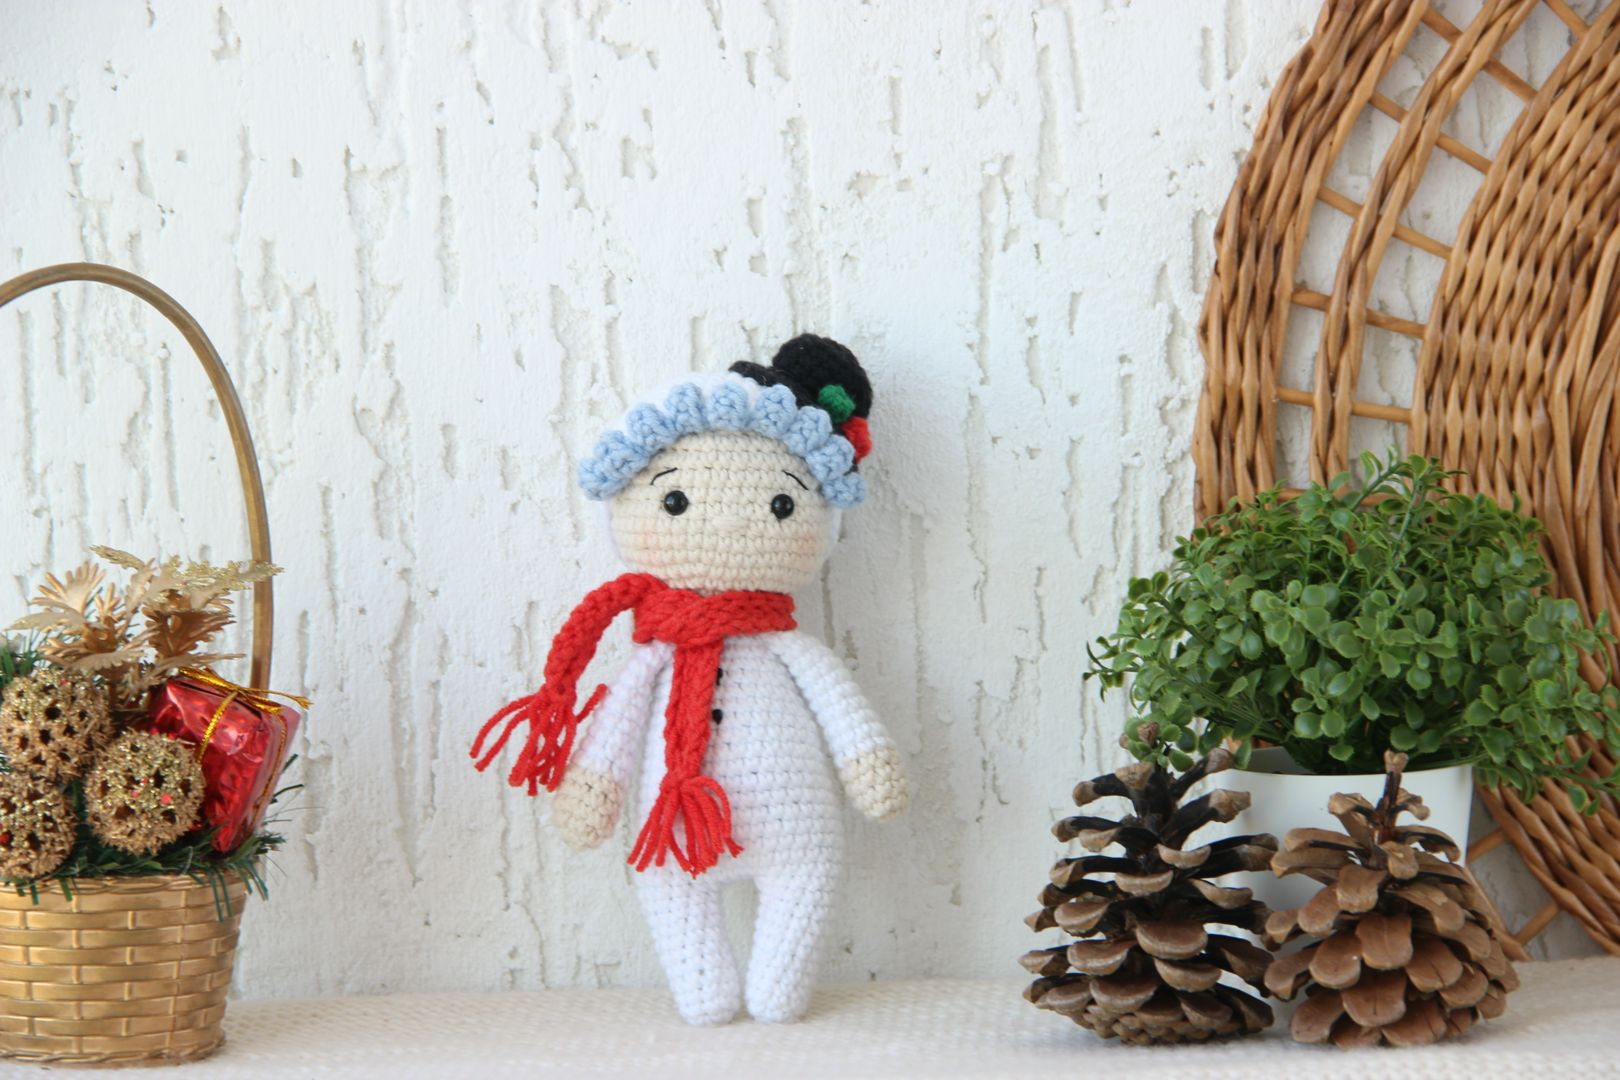 МК новогодней вязаной игрушки крючком "Амигурушка снеговик"